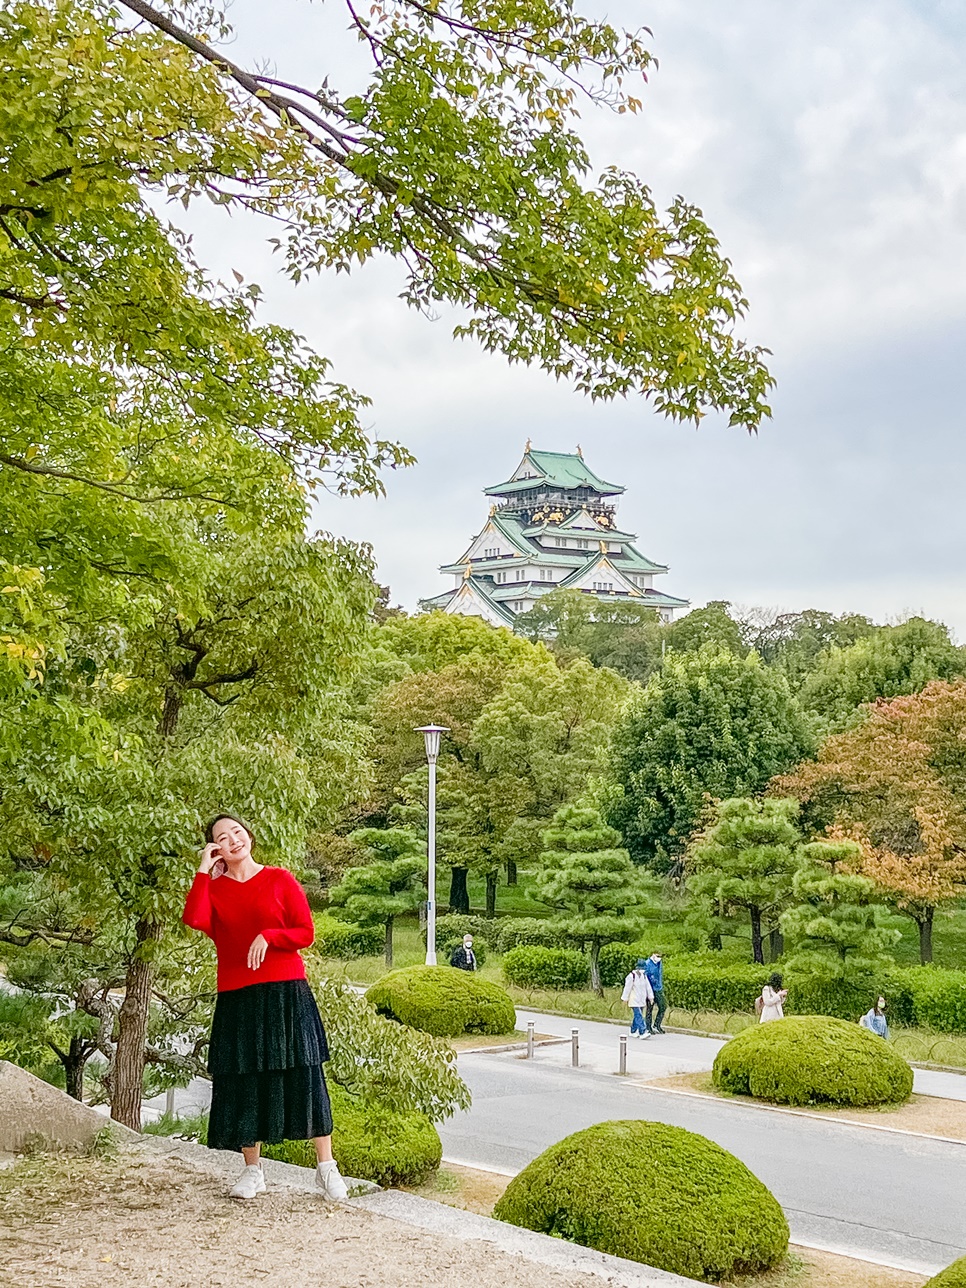 해외여행 준비물 말톡 일본유심 eSIM 해외유심칩 구매